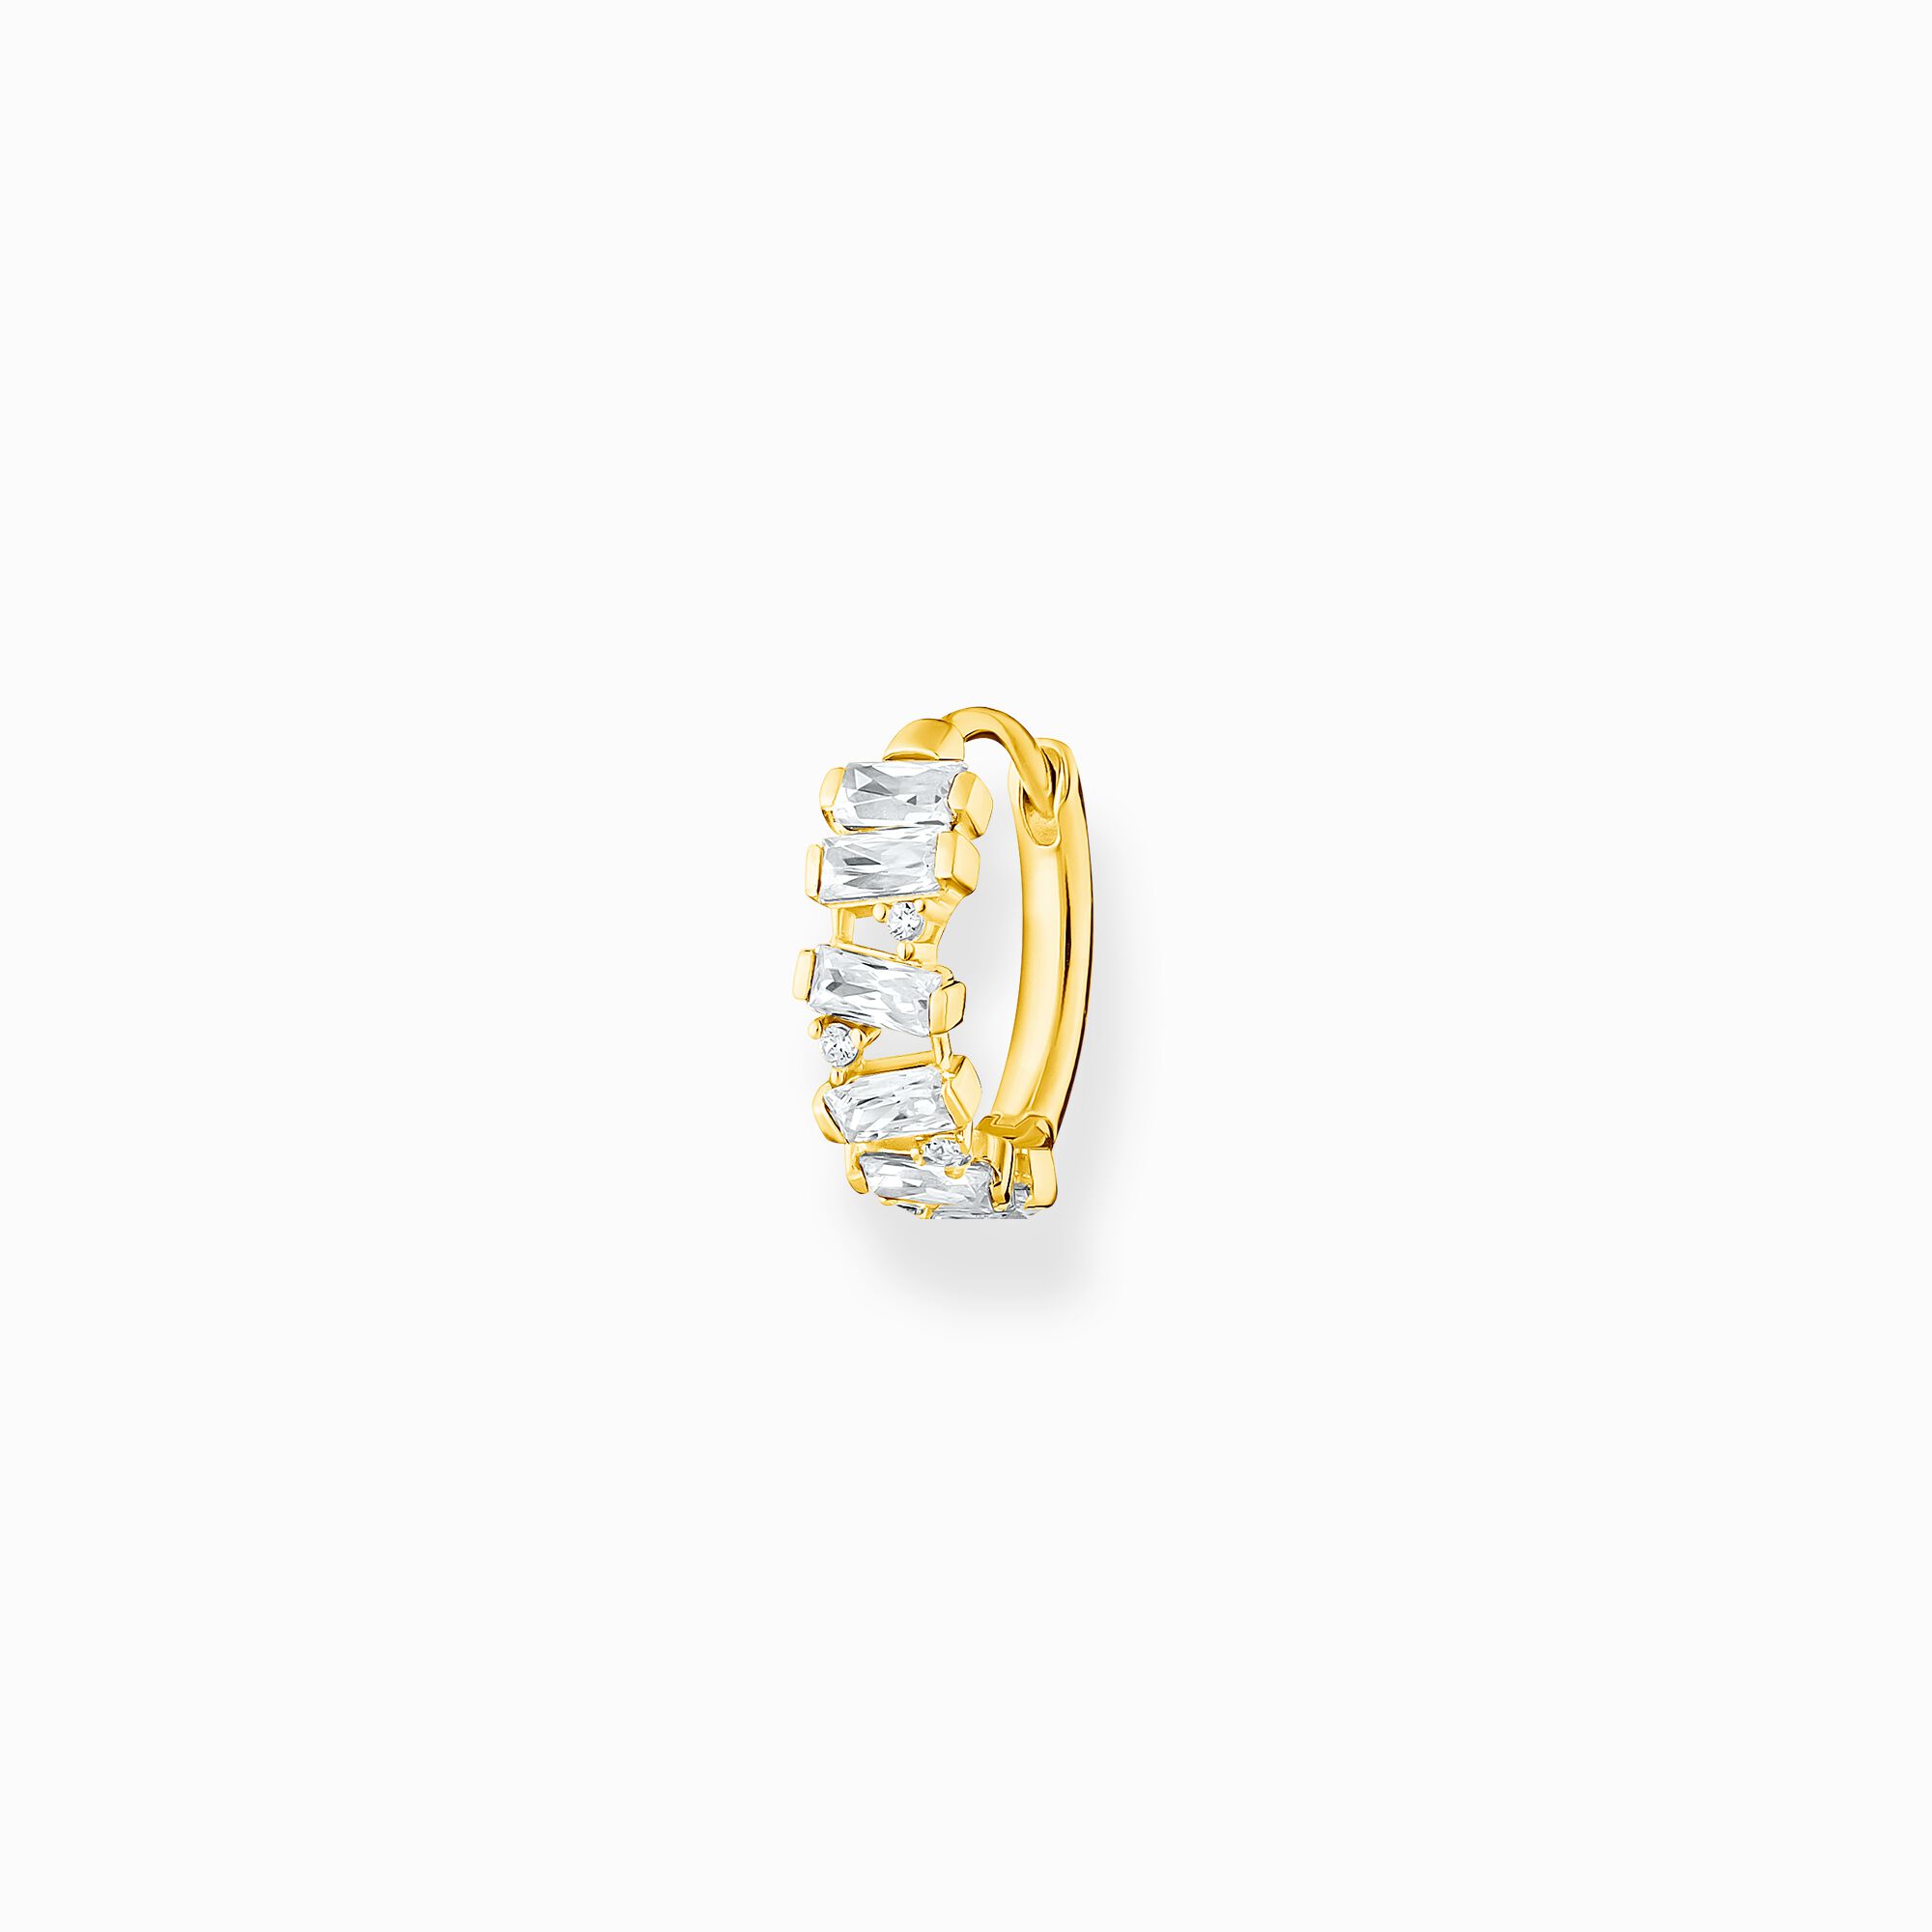 Aro blanco piedras oro de la colección Charming Collection en la tienda online de THOMAS SABO